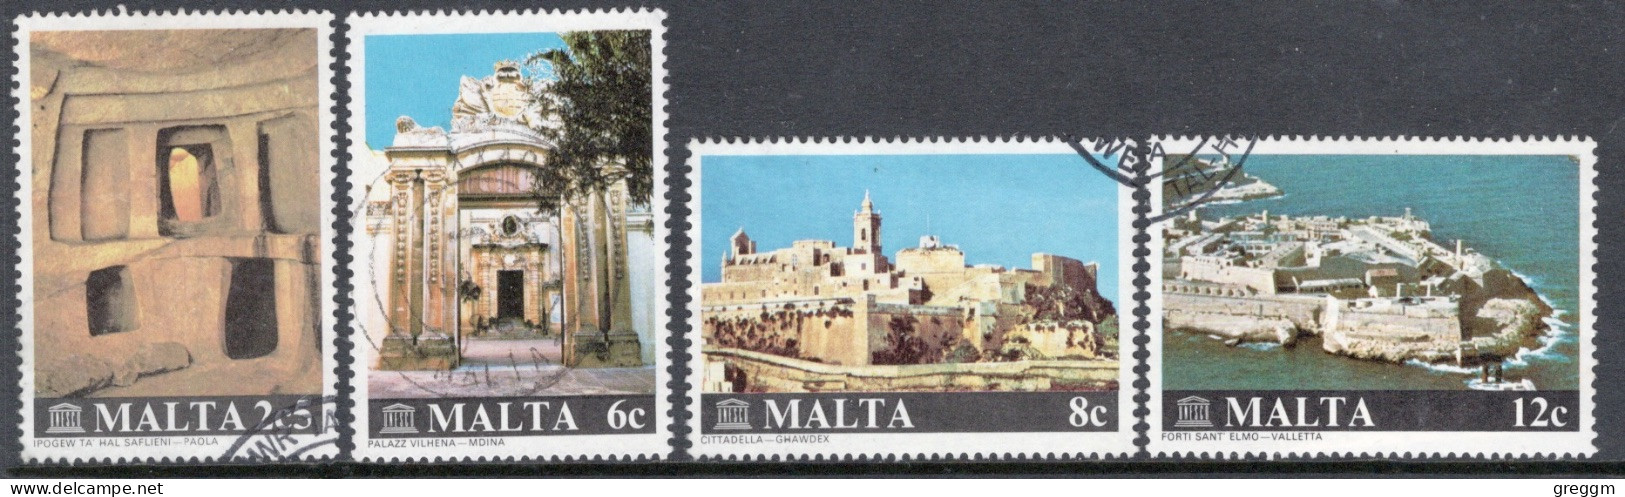 Malta 1980 Set To Celebrate Construction Preservation In Fine Used - Malta